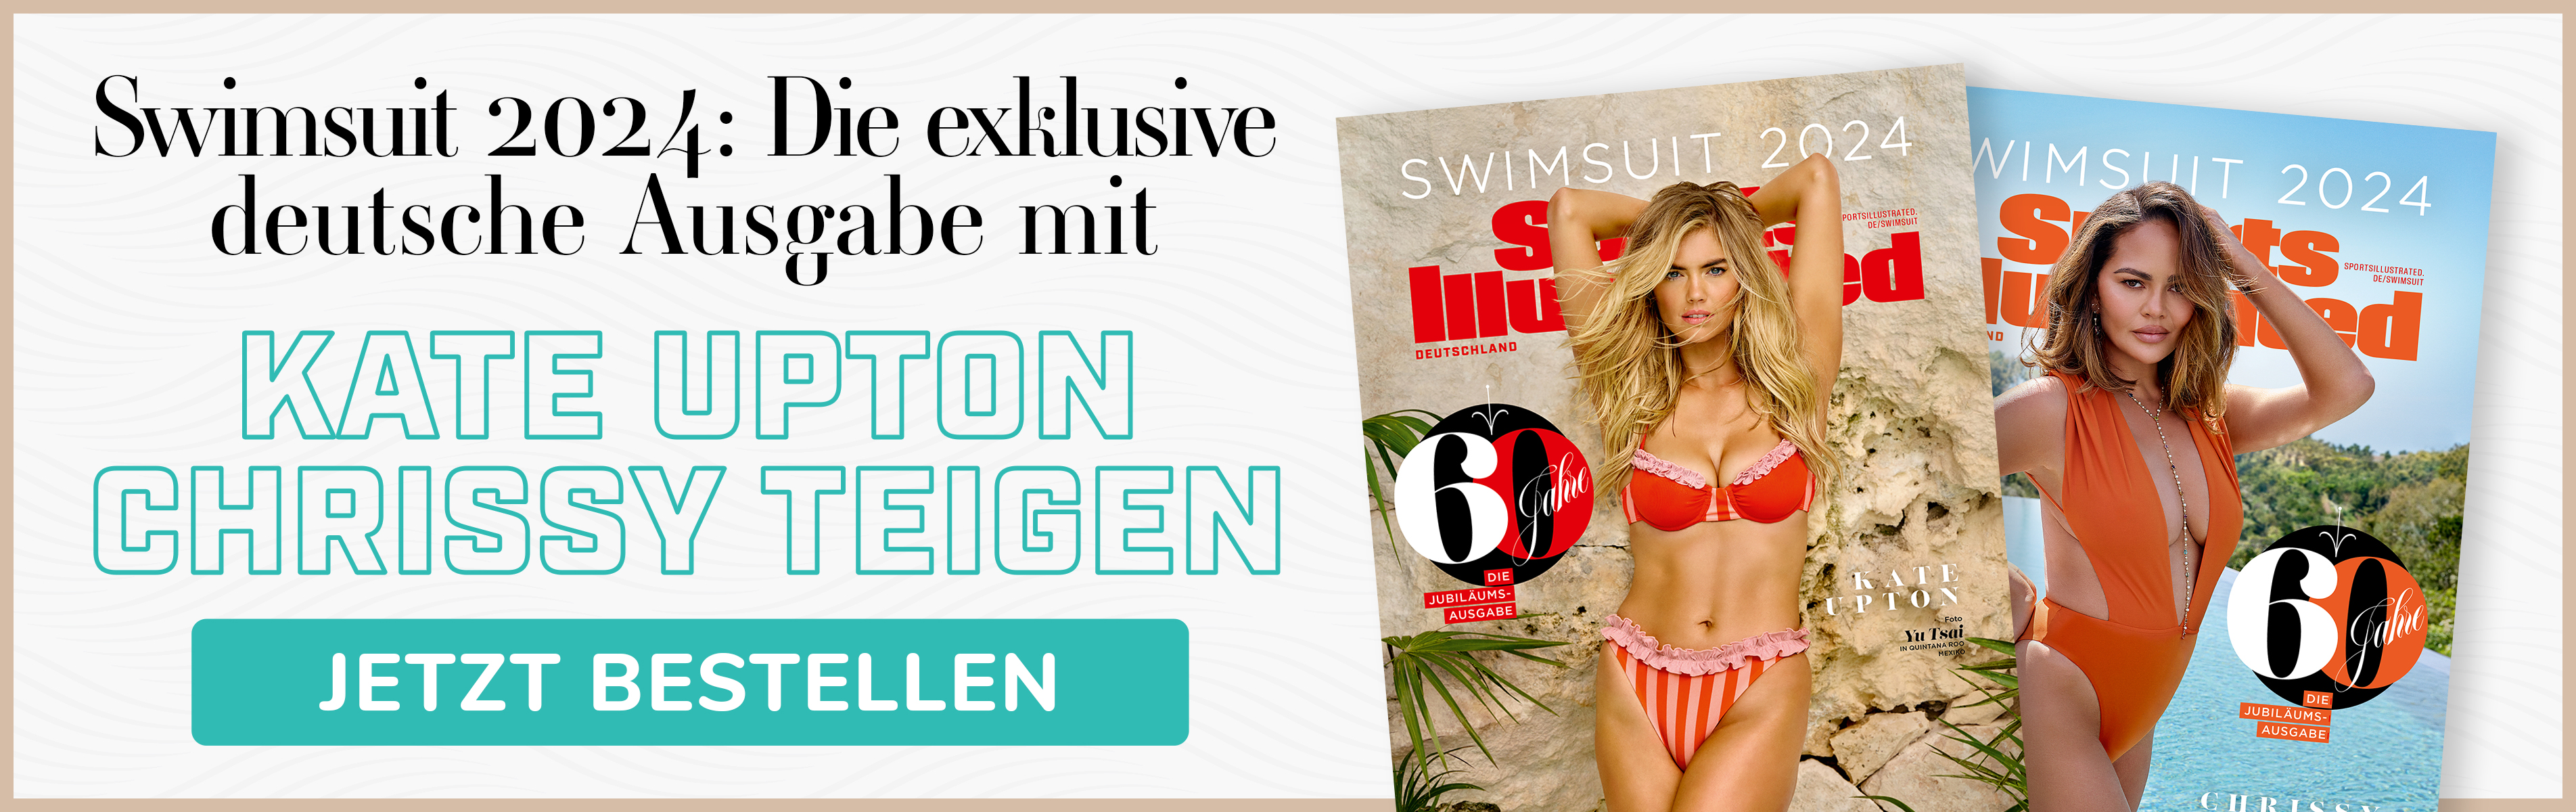 60 Jahre Swimsuit-Edition: legendäre Bikini-Ausgabe von SPORTS ILLUSTRATED mit Covermodel Kate Upton und Chrissy Teigen.